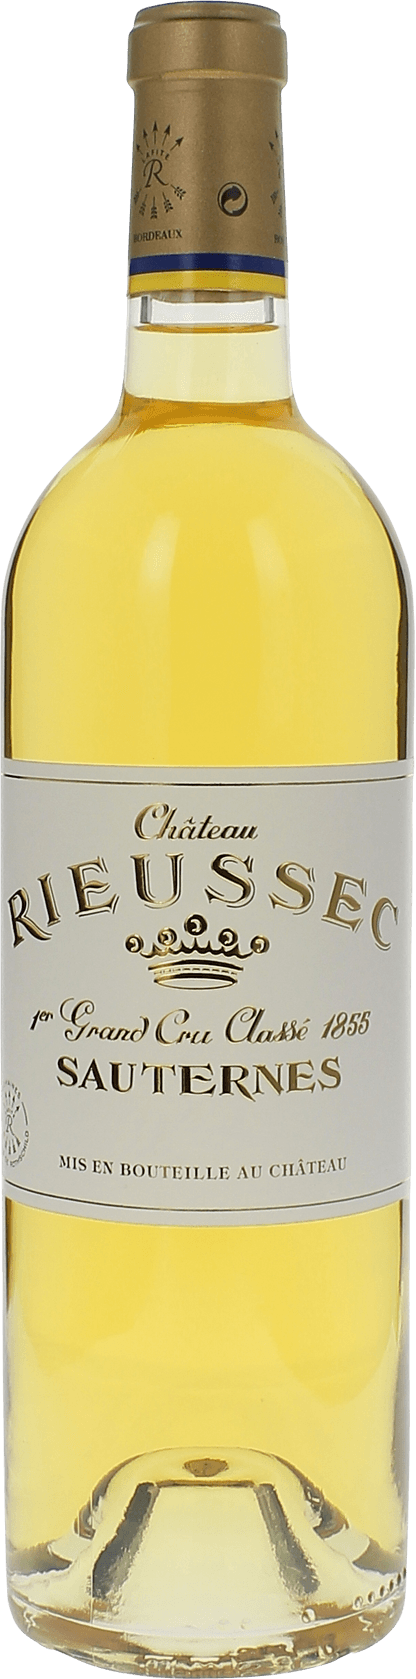 Rieussec 1990 1er cru Sauternes, Bordeaux blanc